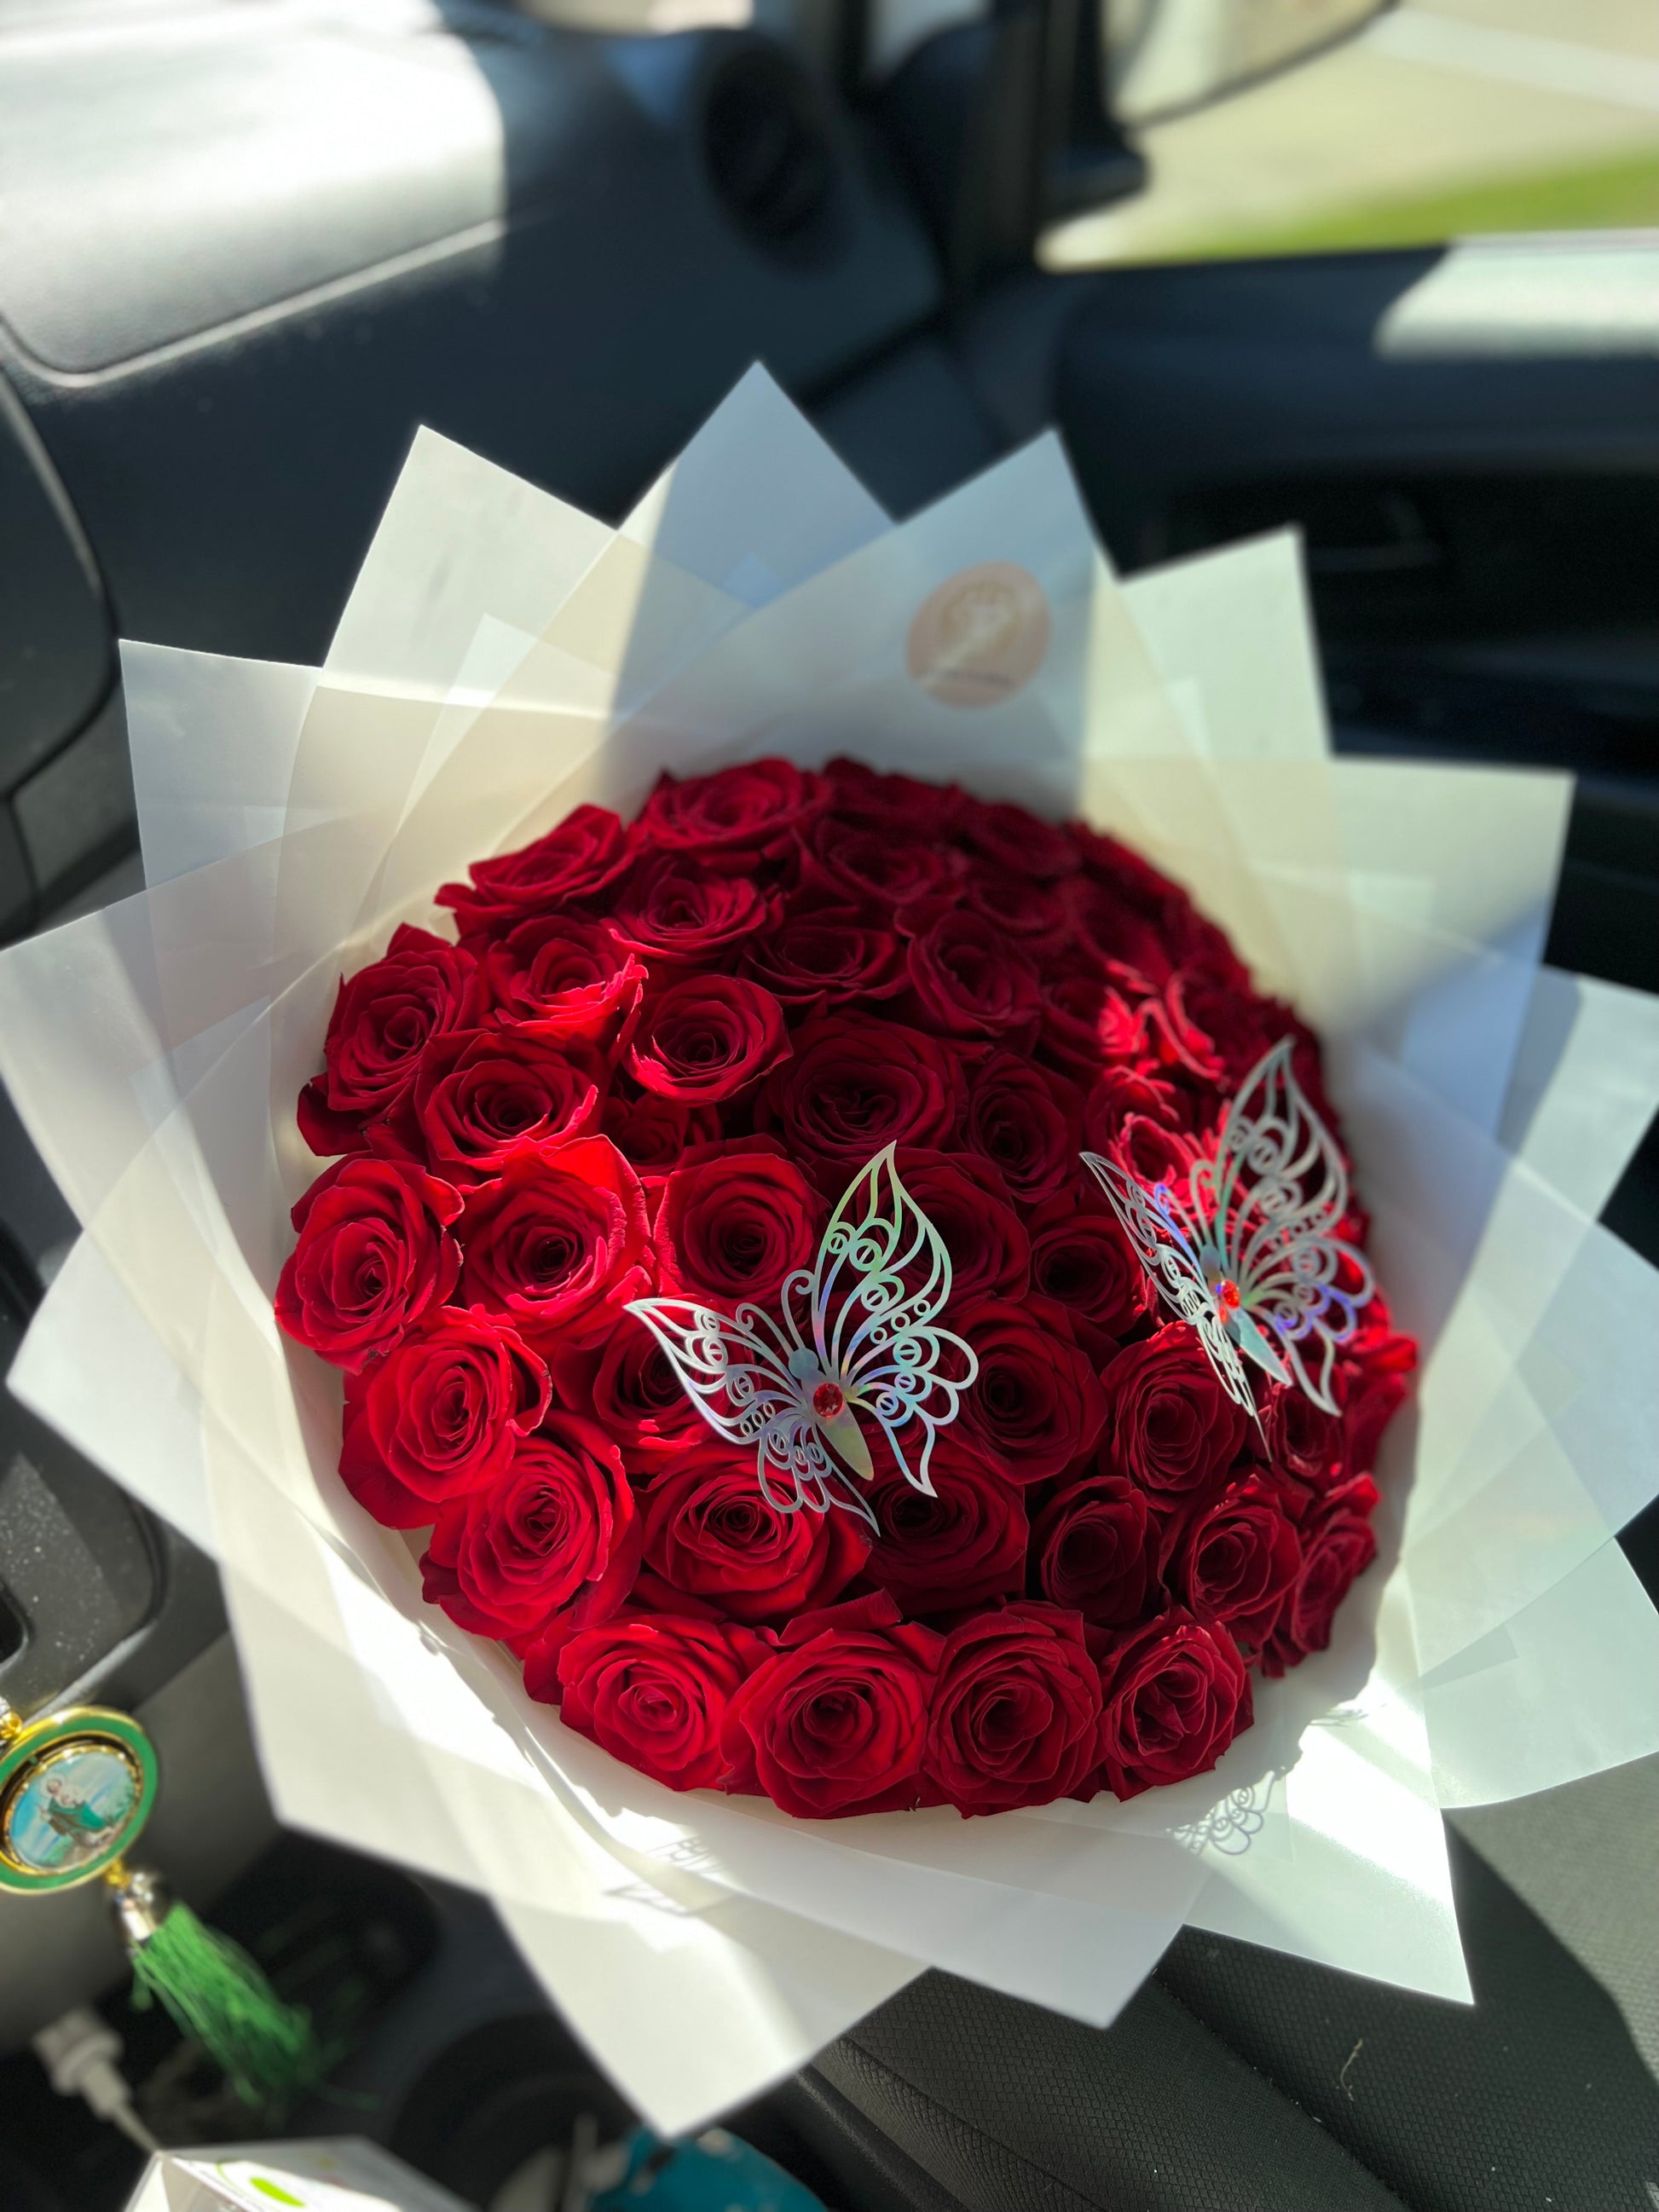 Ramo buchón de 50 rosas con corona 🌹👑 Sanford NC 📍#ramobuchon #para